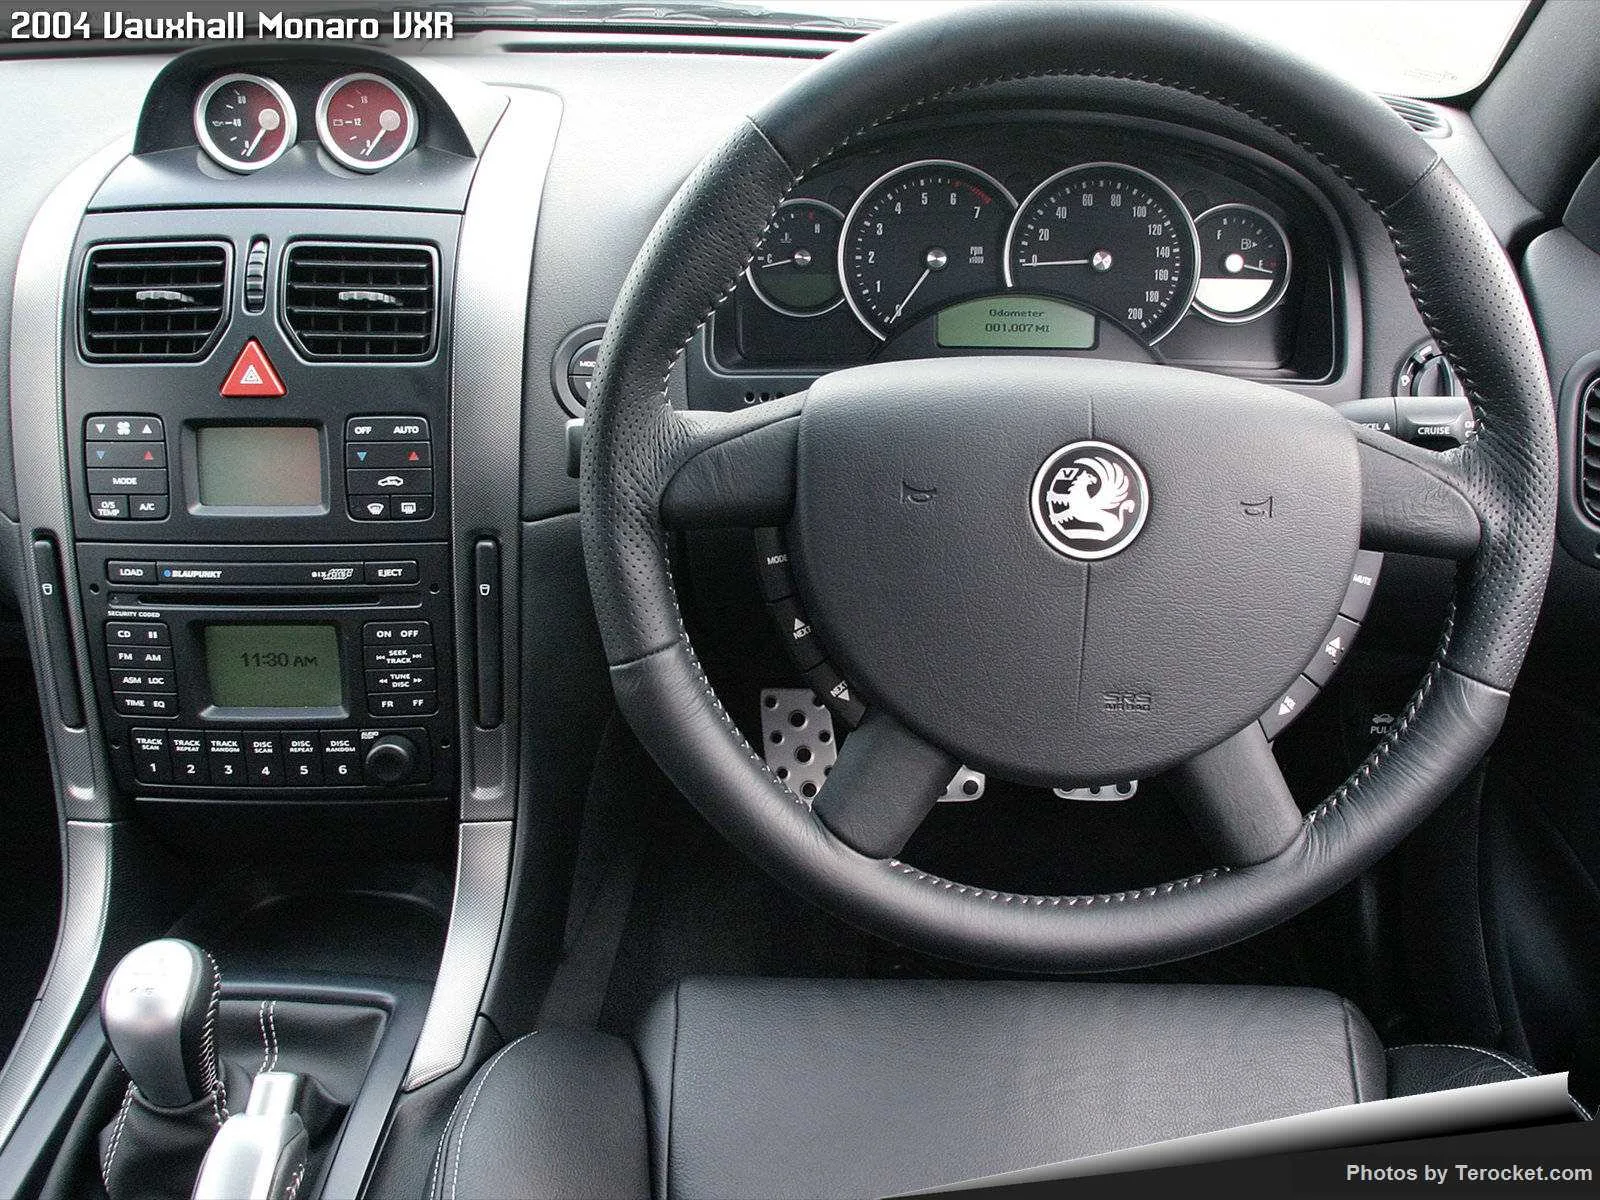 Hình ảnh xe ô tô Vauxhall Monaro VXR 2004 & nội ngoại thất